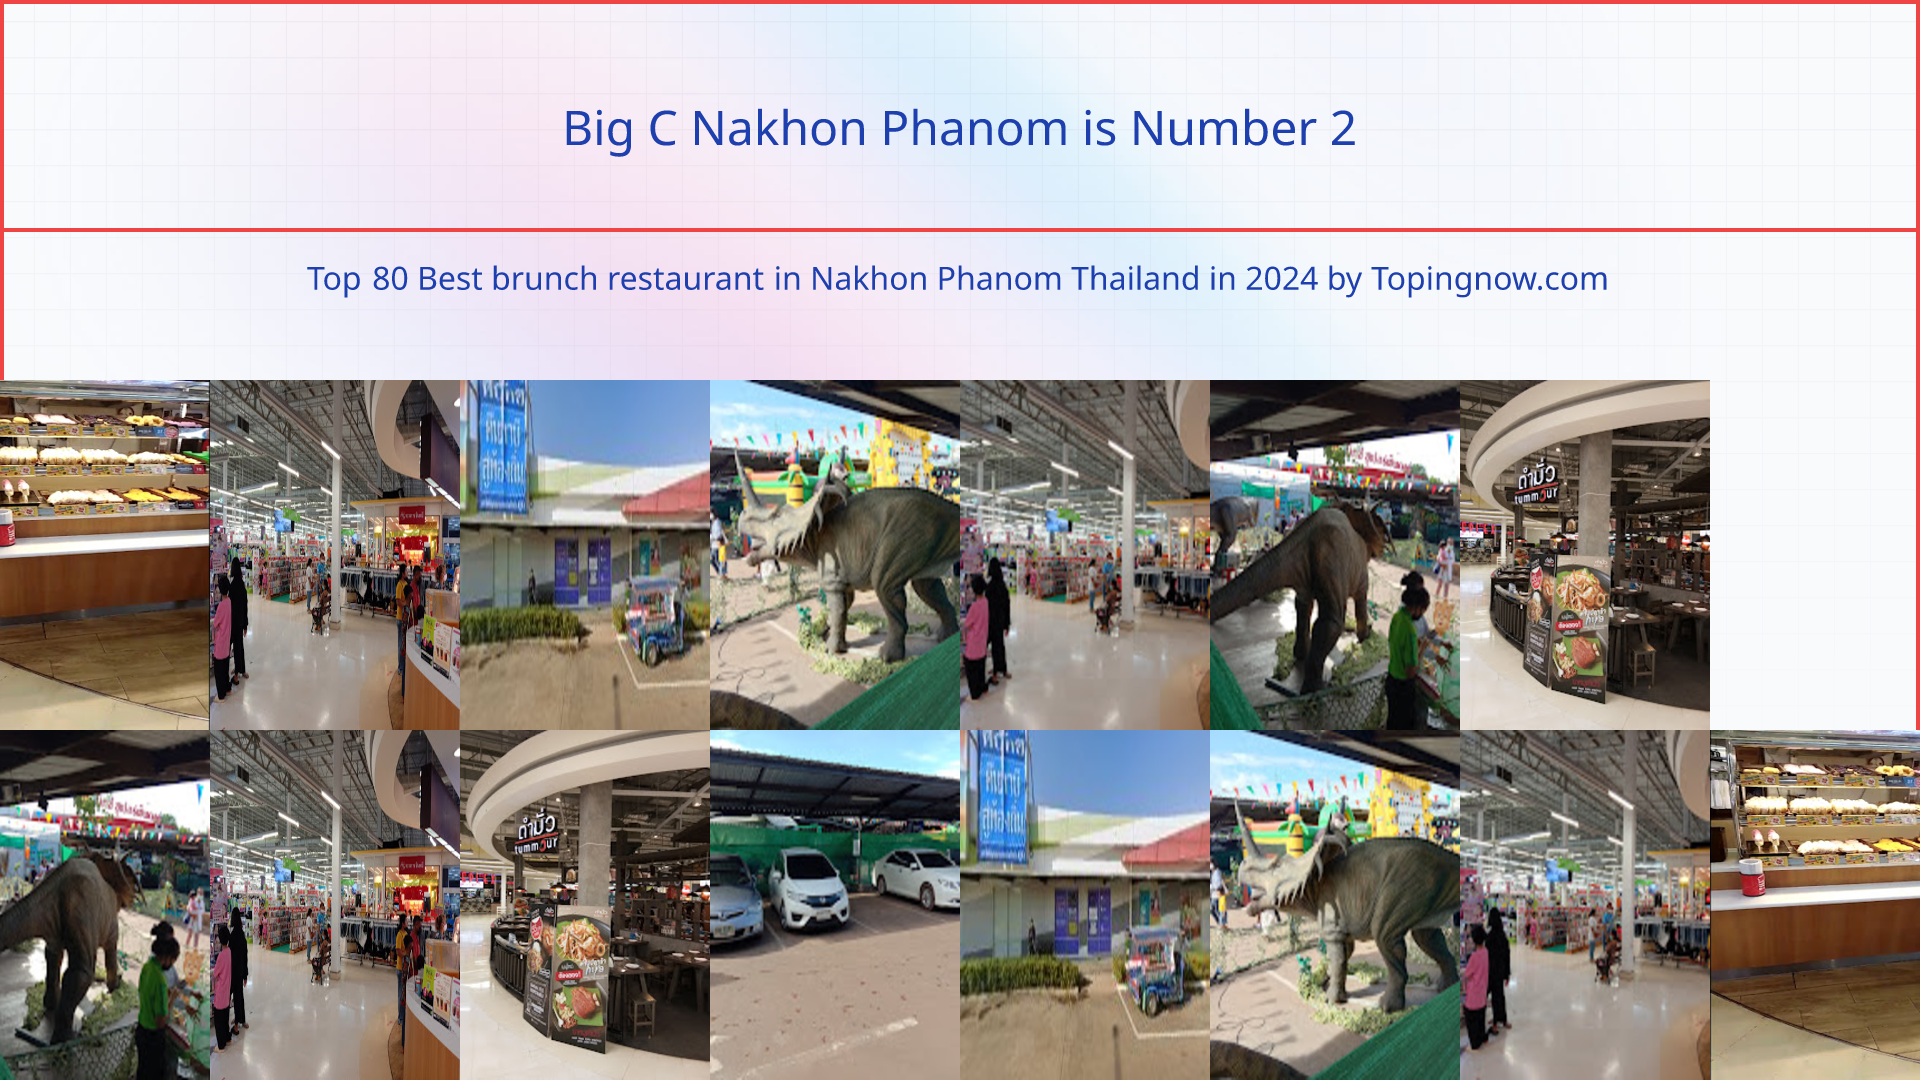 Big C Nakhon Phanom: Top 80 Best brunch restaurant in Nakhon Phanom Thailand in 2024